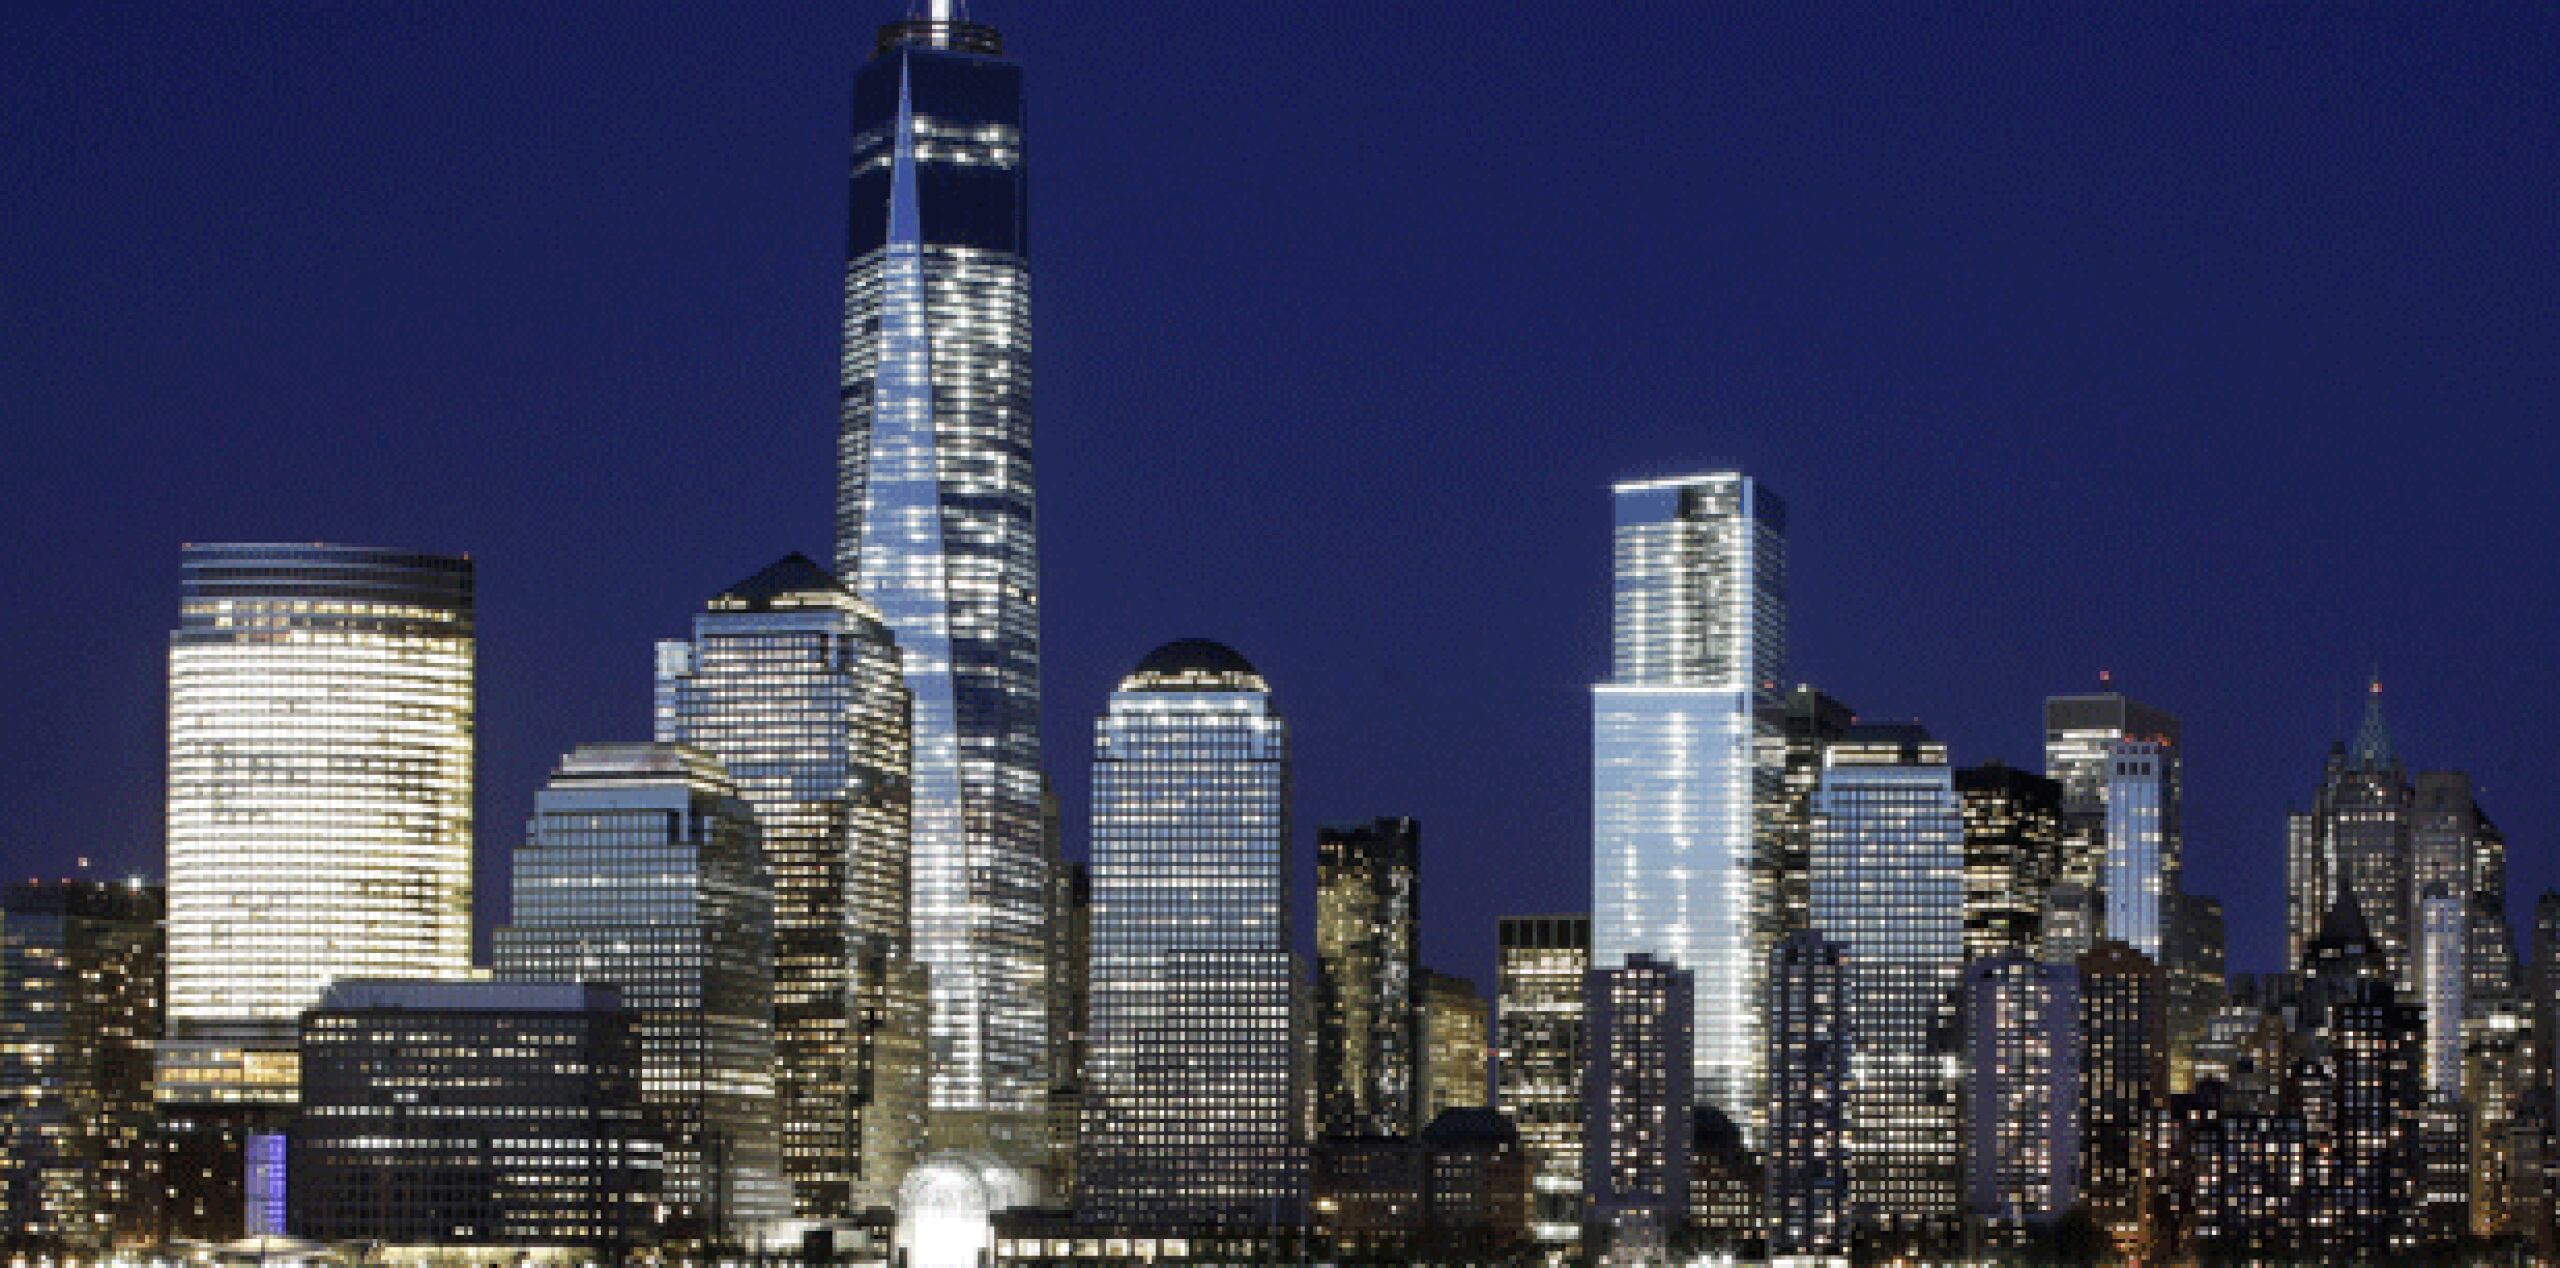 Se harían excepciones a edificios icónicos, como el Empire State y el Edificio Chrysler, así como una de las mayores atracciones turísticas nocturnas: Times Square. (AP)